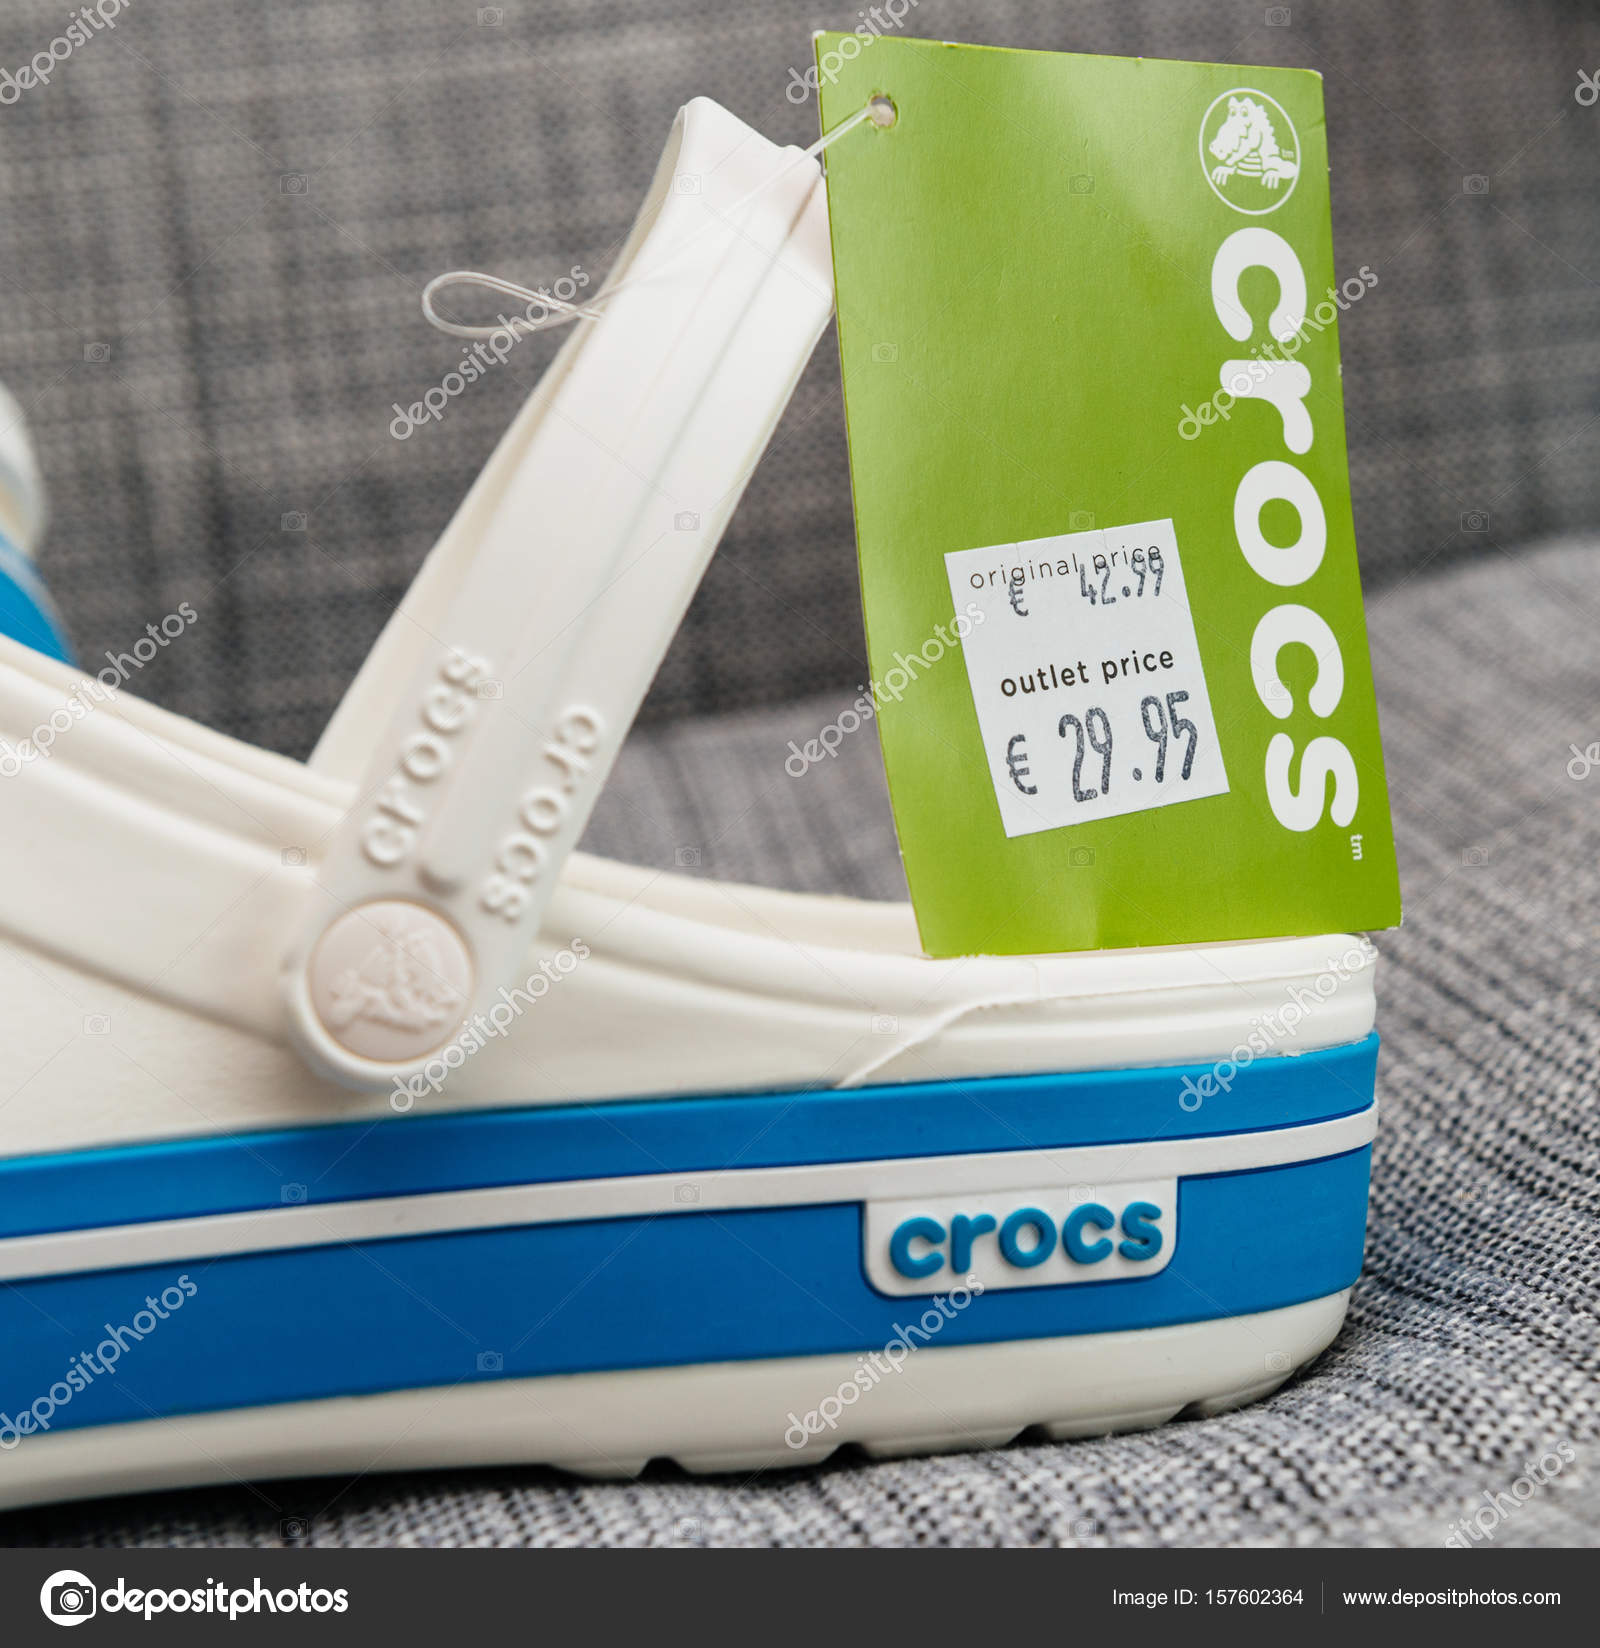 the price of crocs